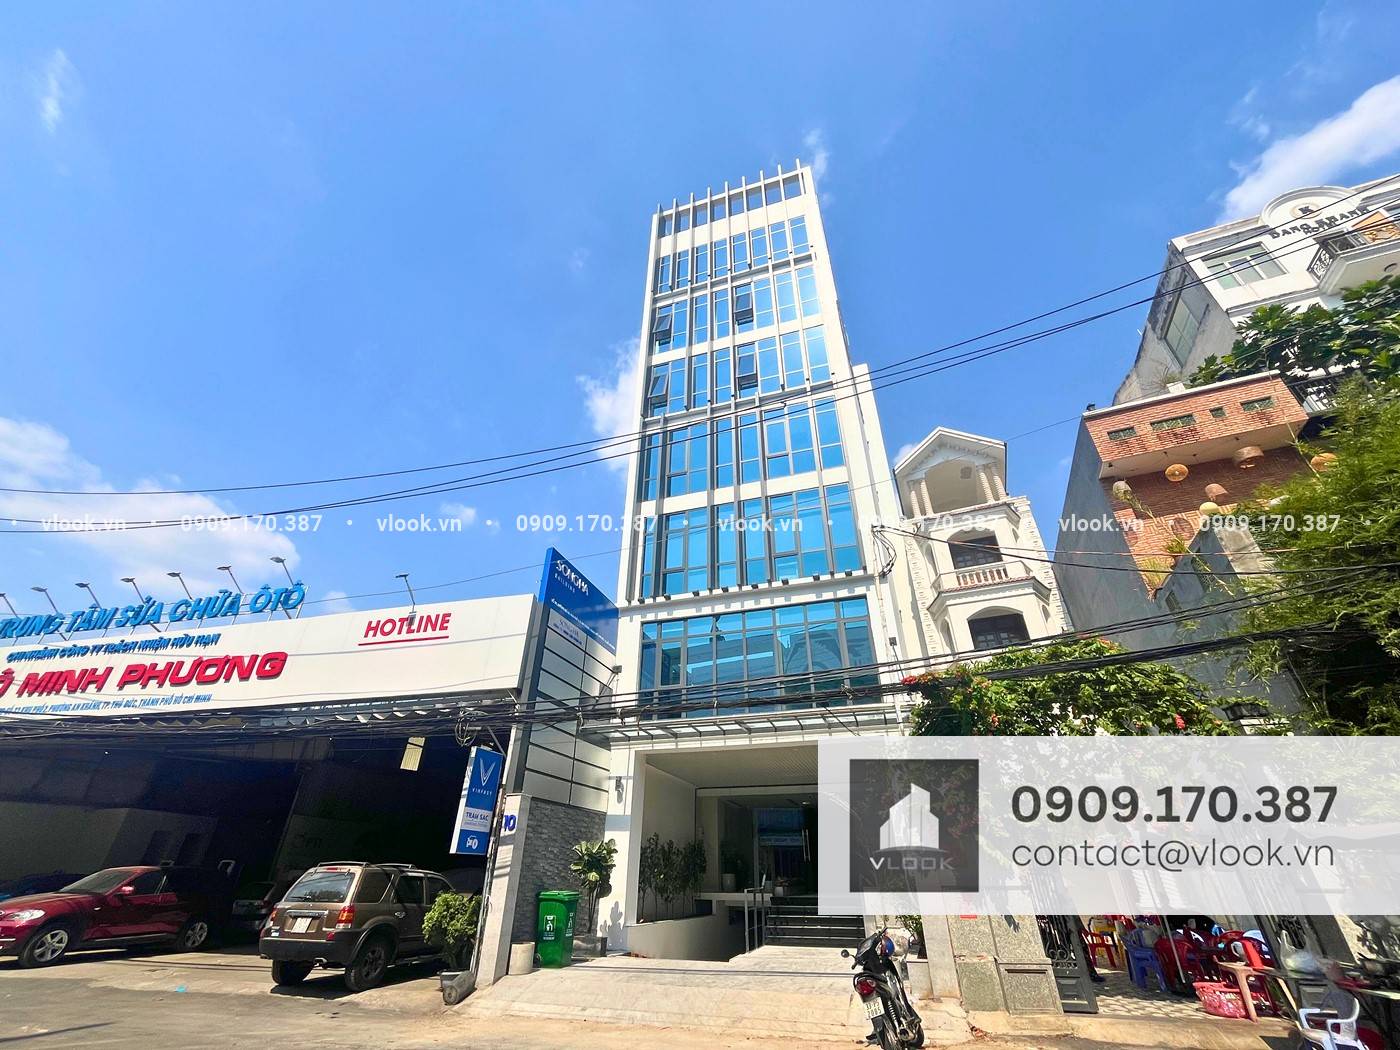 Cao ốc văn phòng cho thuê tòa nhà Songha Building, Đường số 33, Quận 2, Thành phố Thủ Đức TP.HCM - vlook.vn